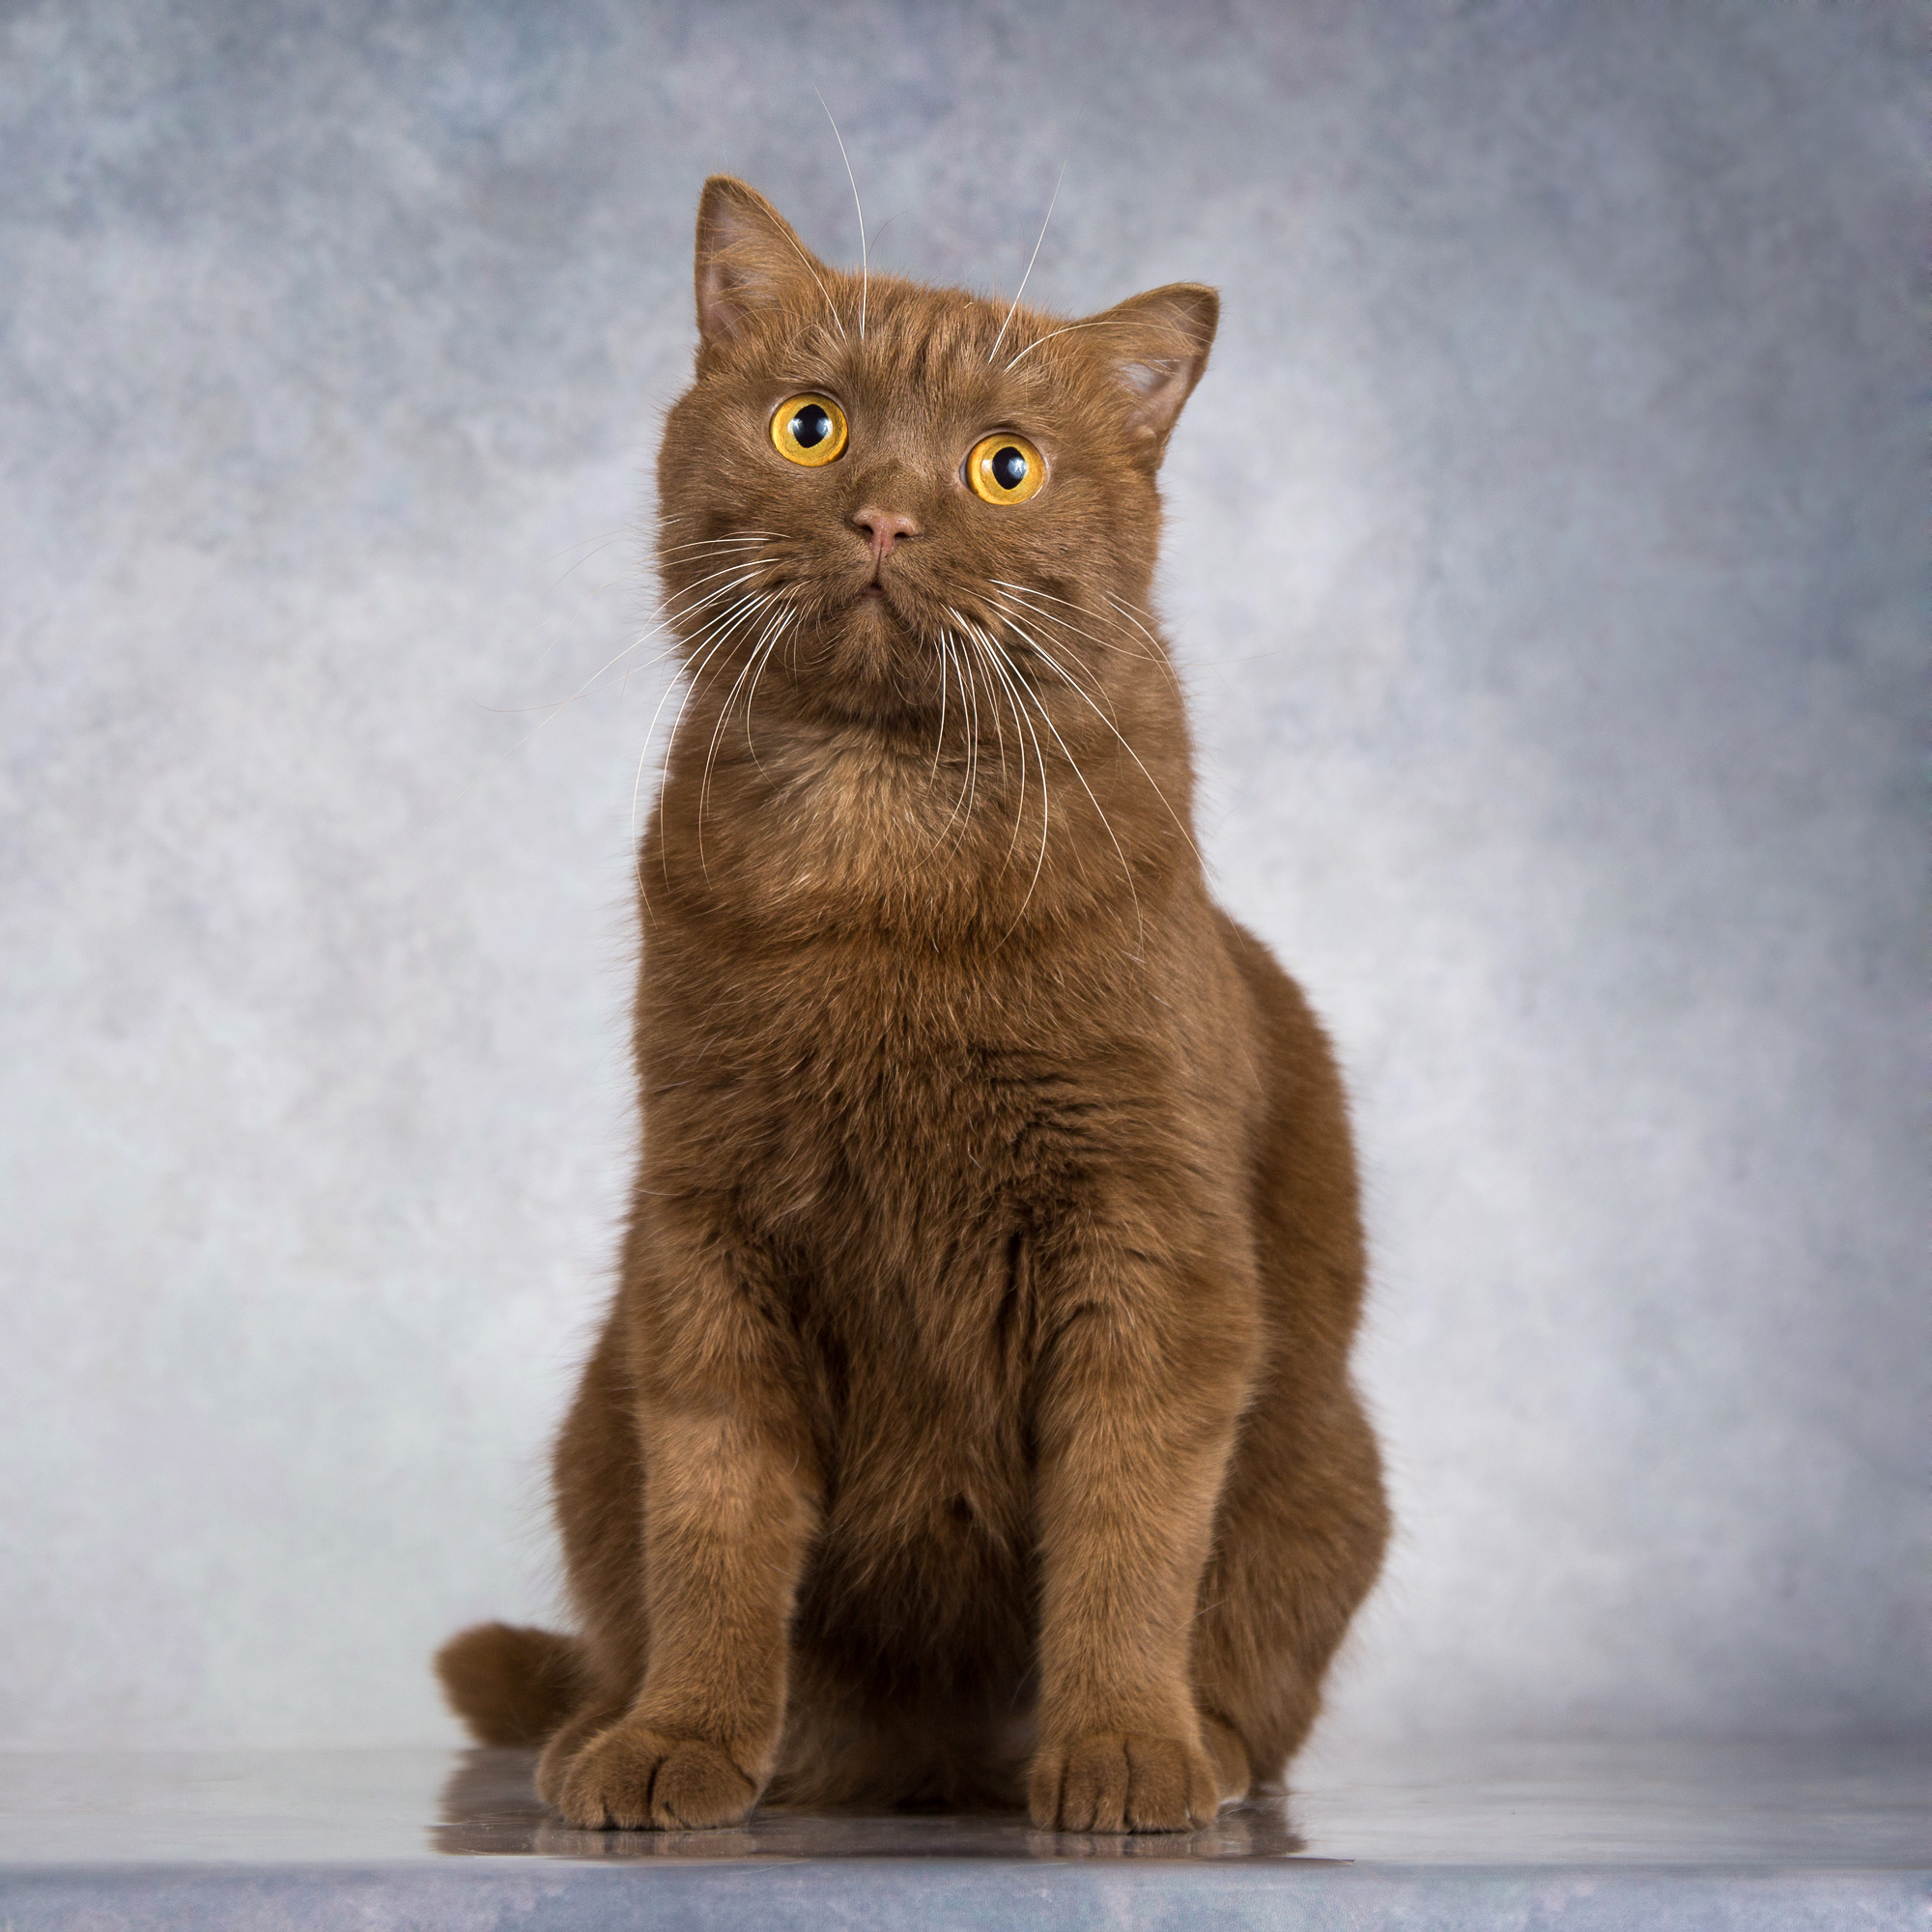 Киткат, шоколадный кот с янтарными глазами, ищет дом | Пикабу